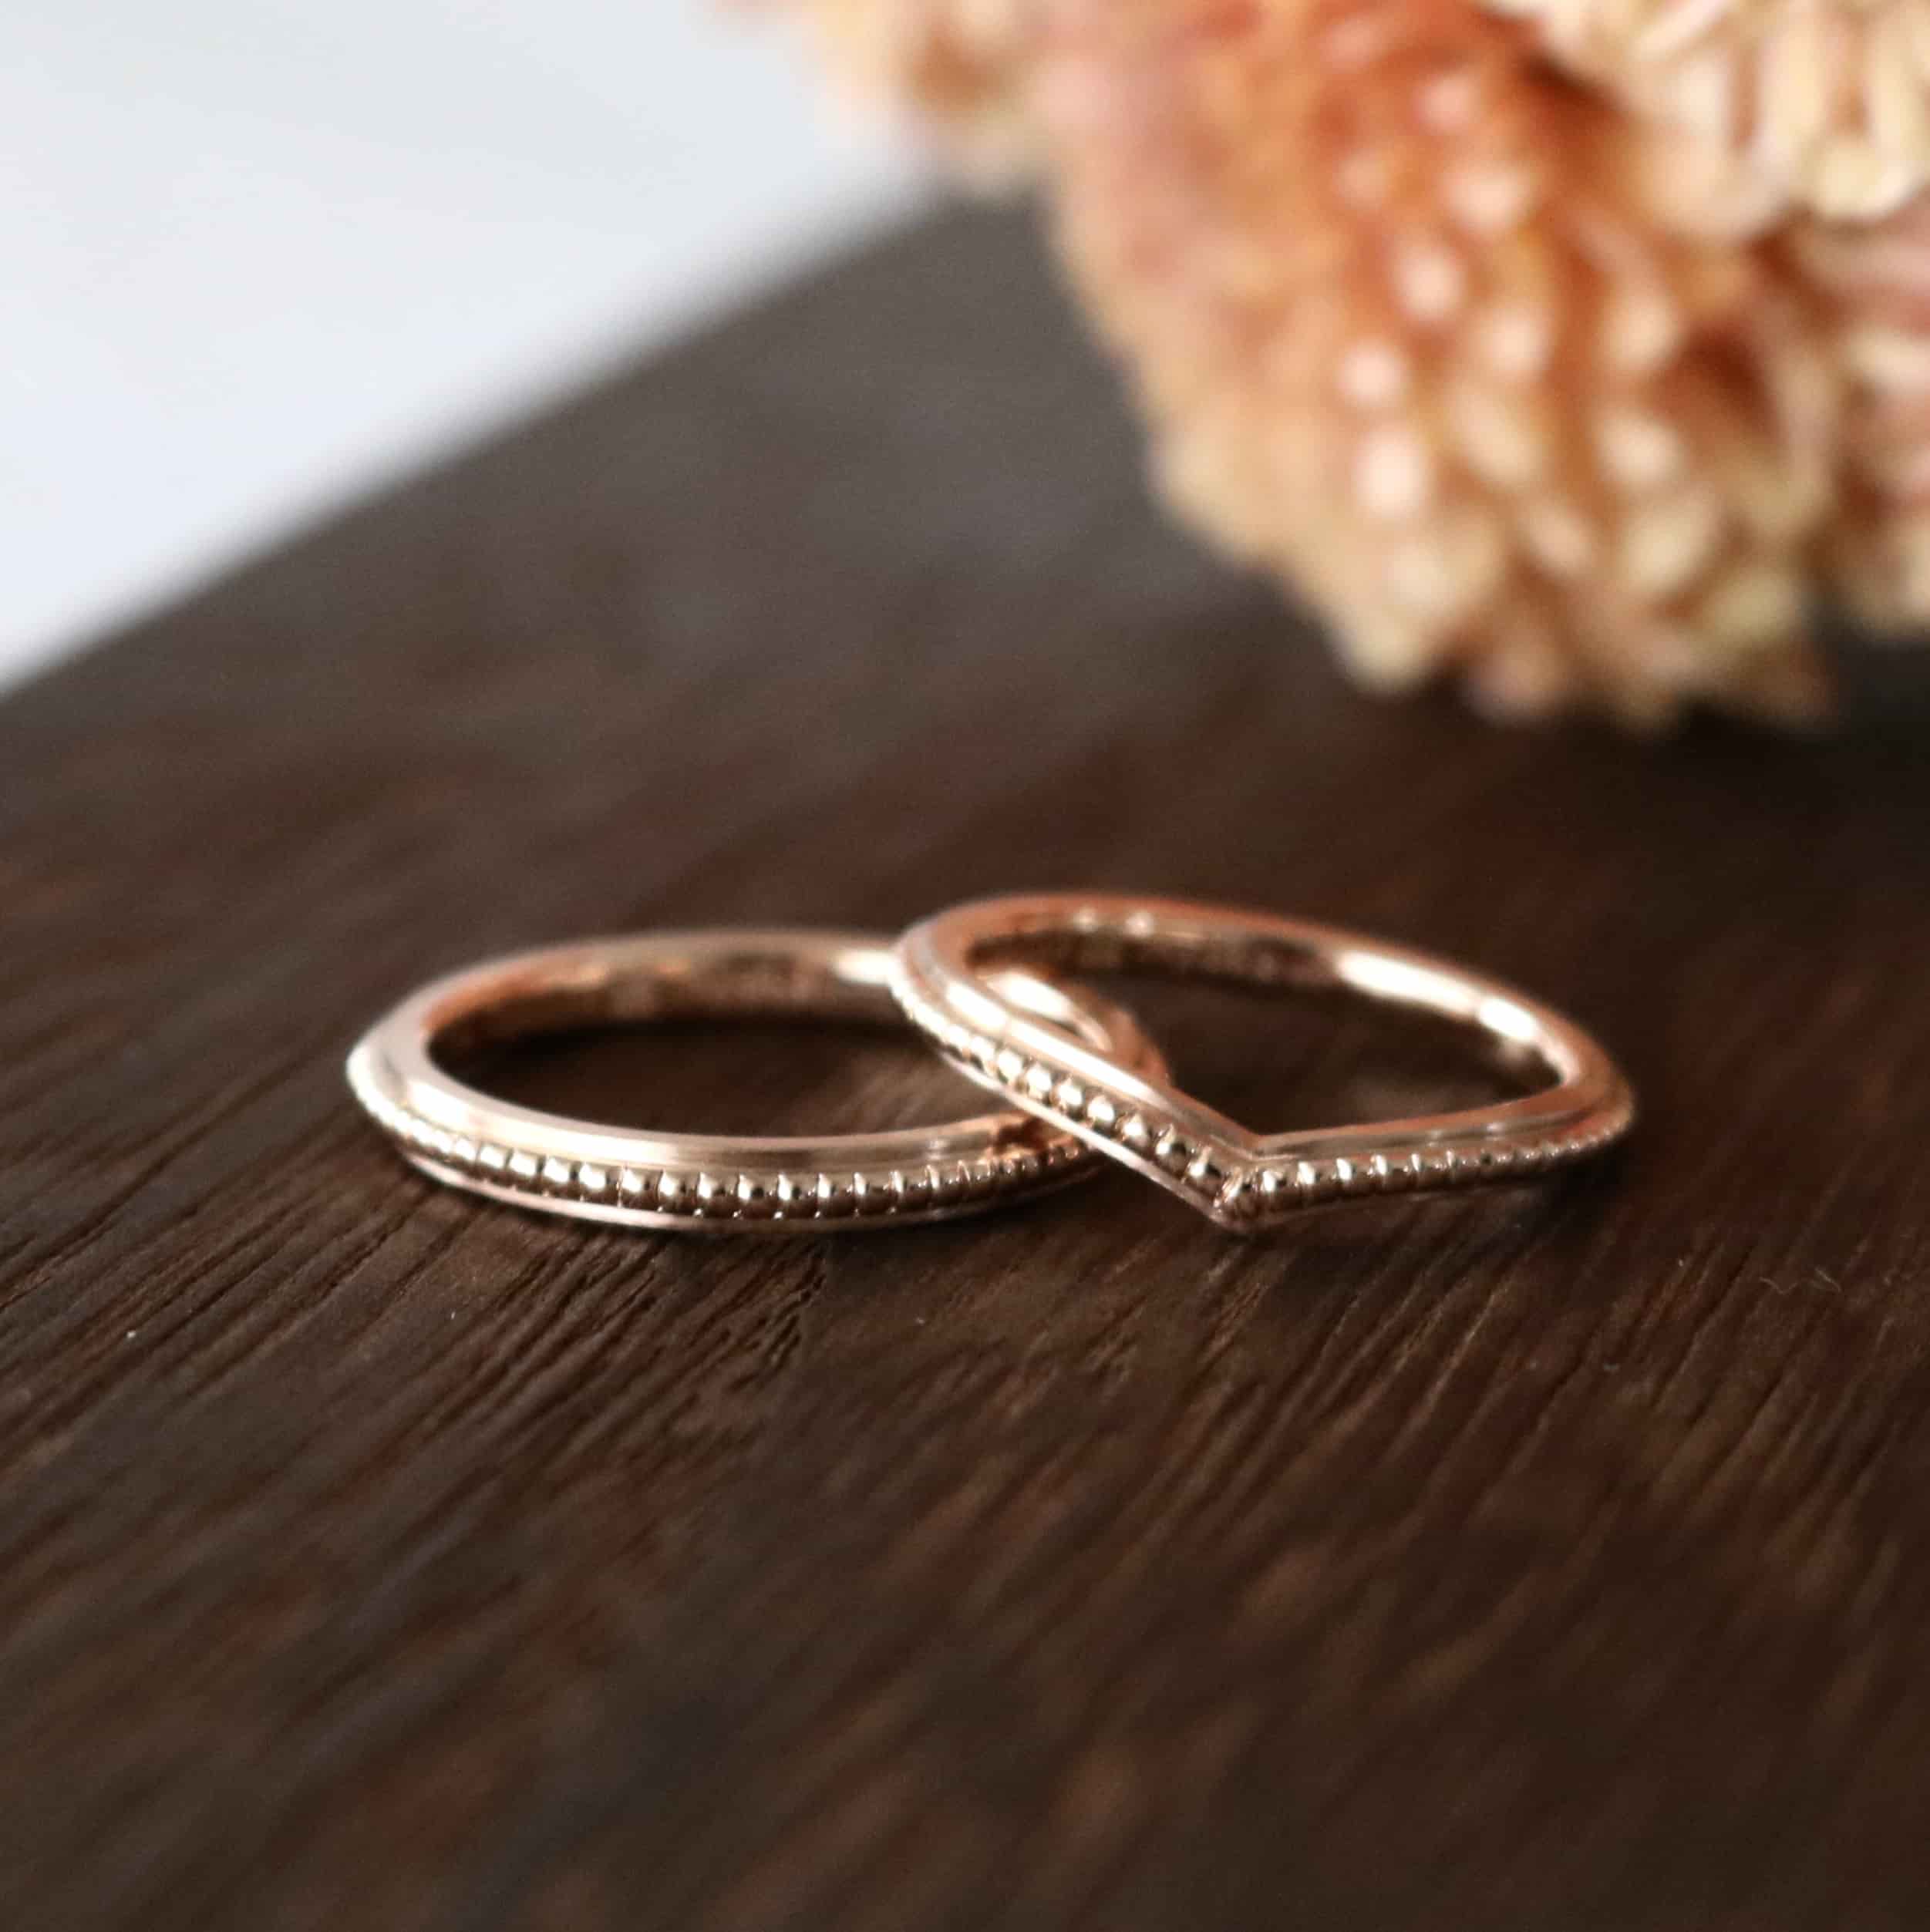 ミルグレインを施した細身のピンクゴールド結婚指輪